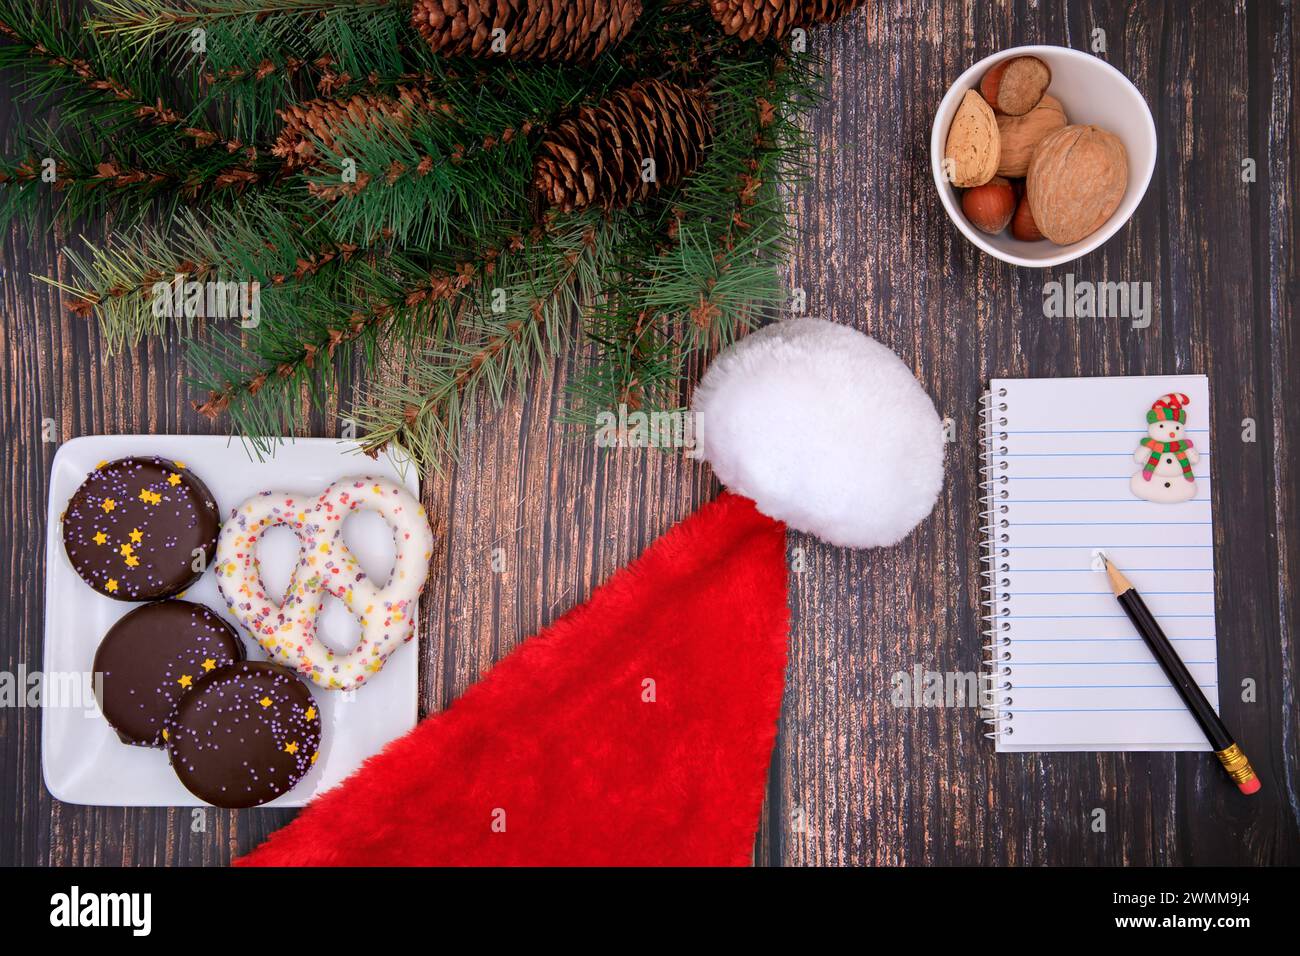 Fondo de Navidad con pan de jengibre, cuaderno y sombrero de santa claus Foto de stock